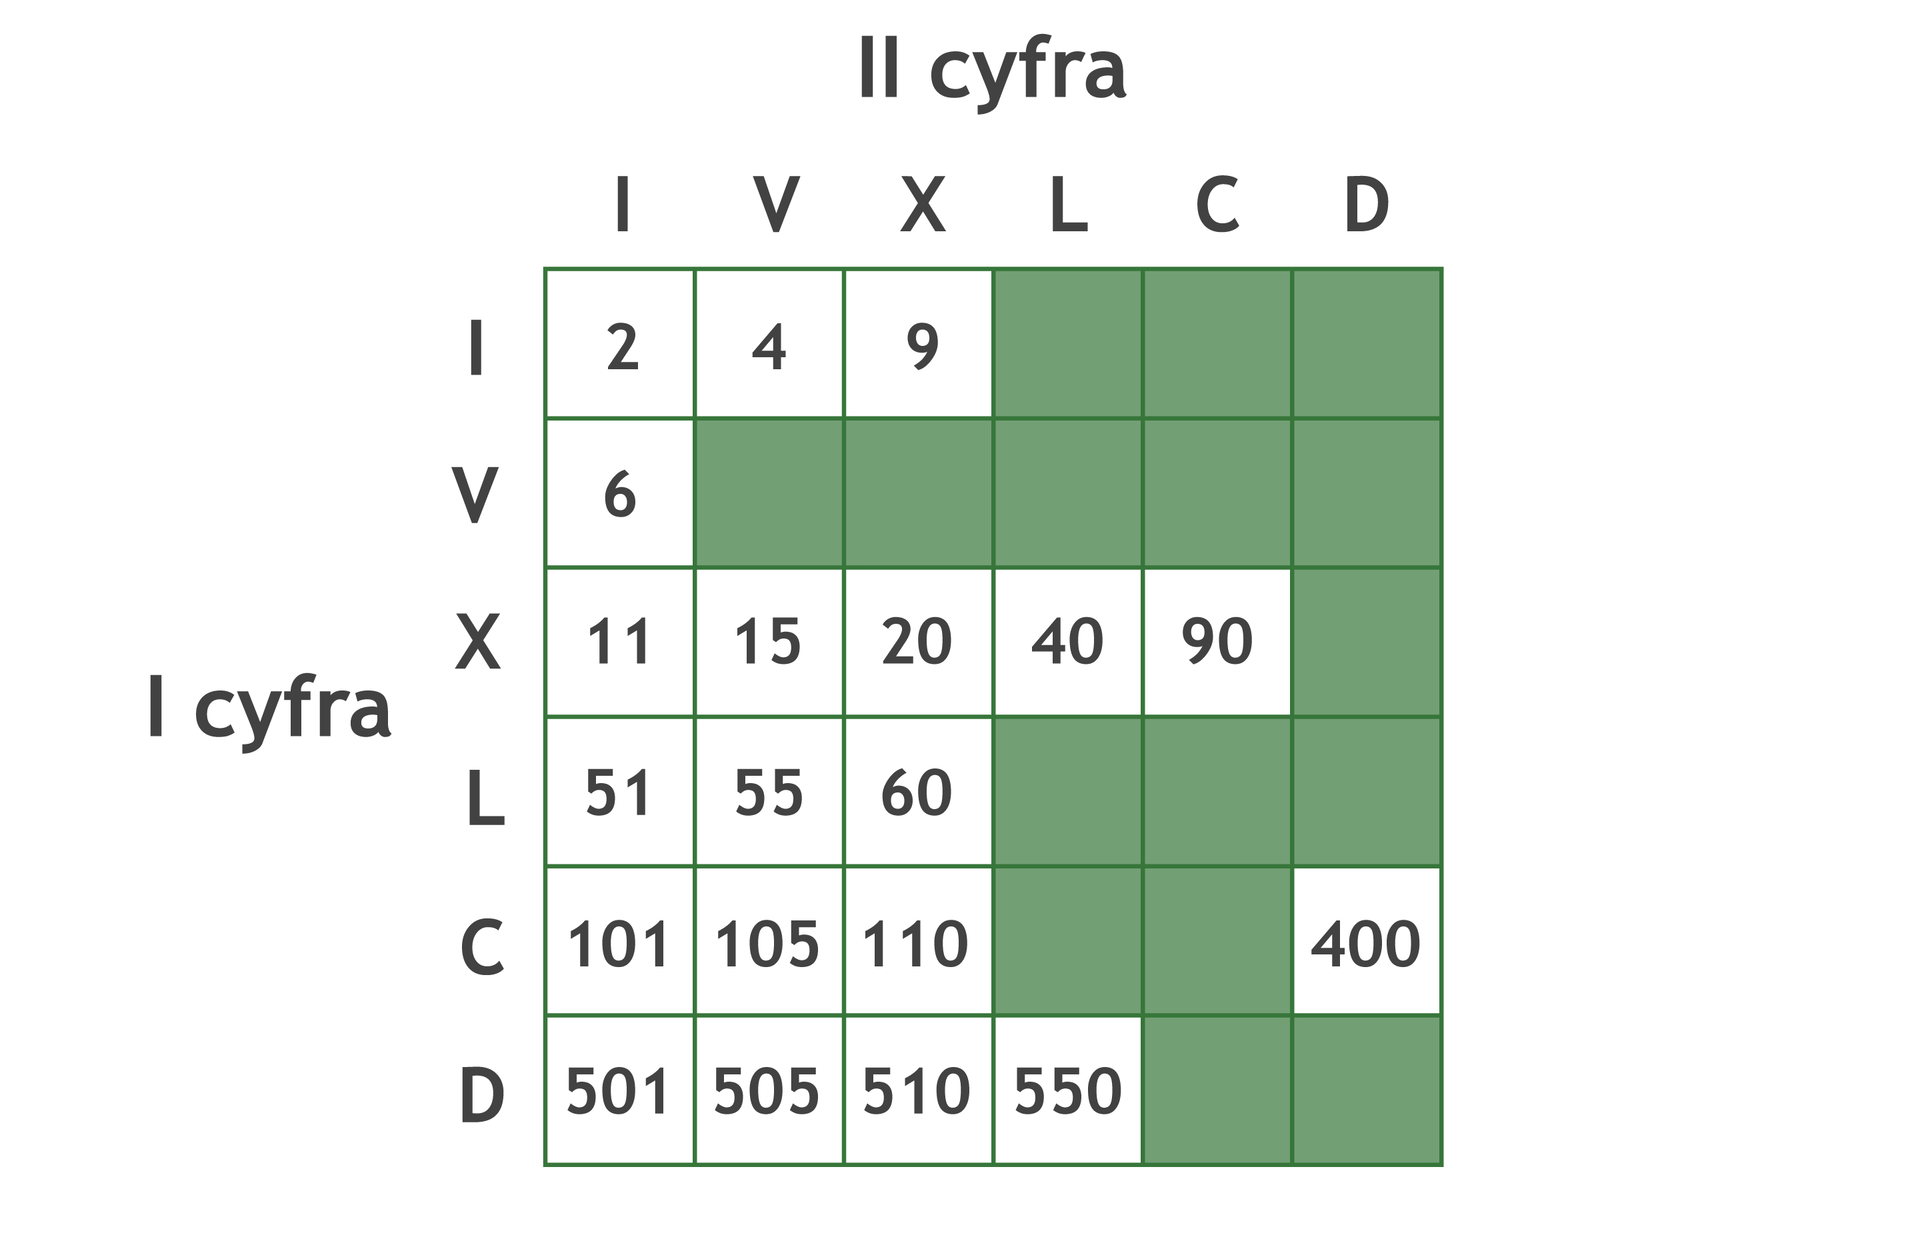 Plansza gry w postaci tabeli złożonej z 6 wierszy i 6 kolumn.